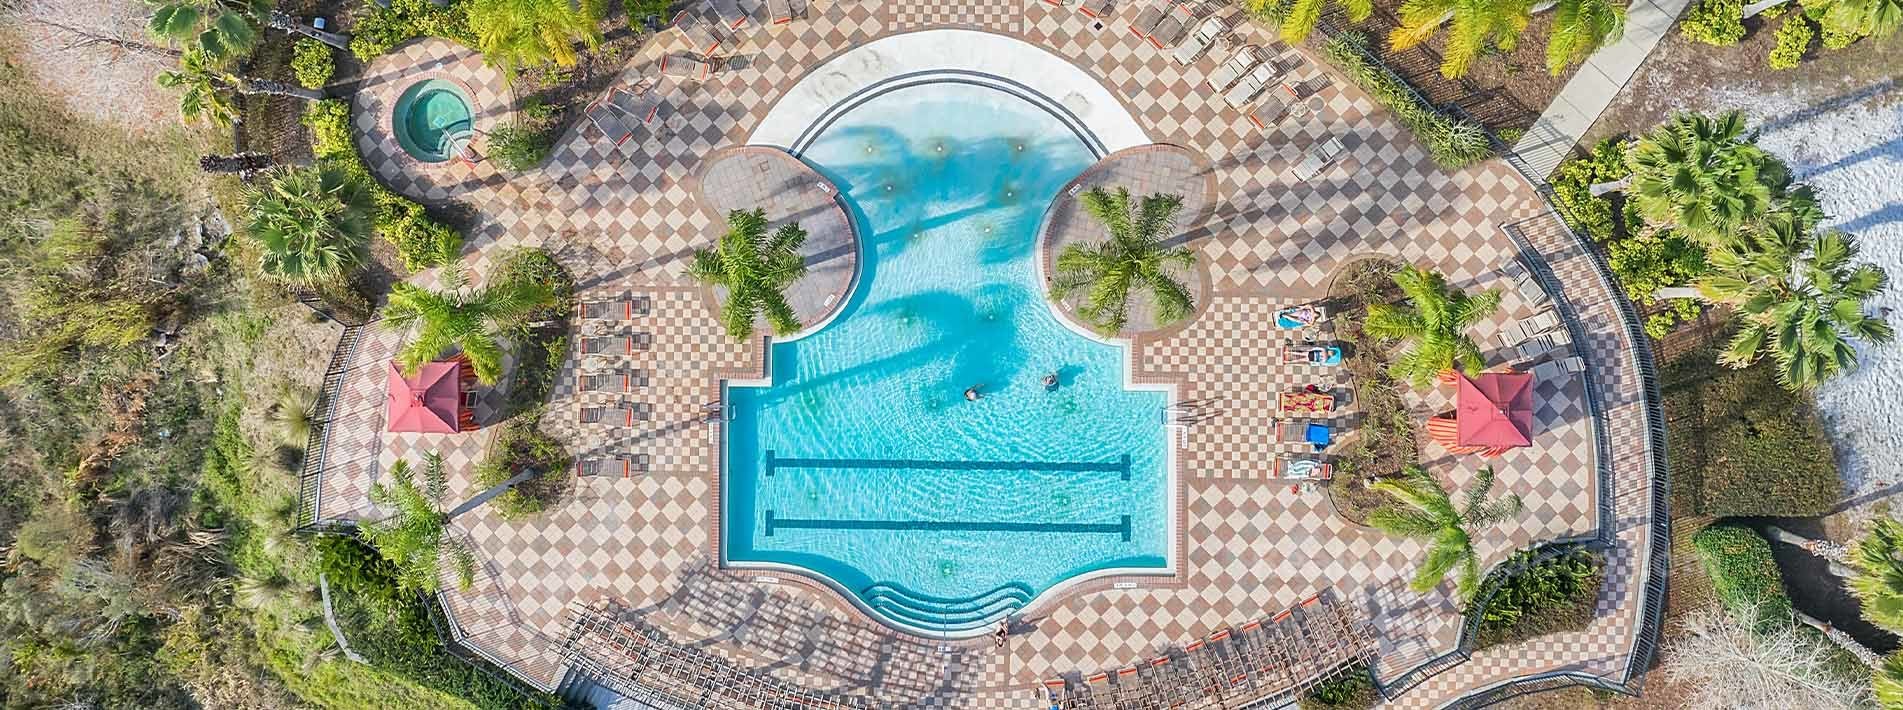 Aviana Resort Pool 